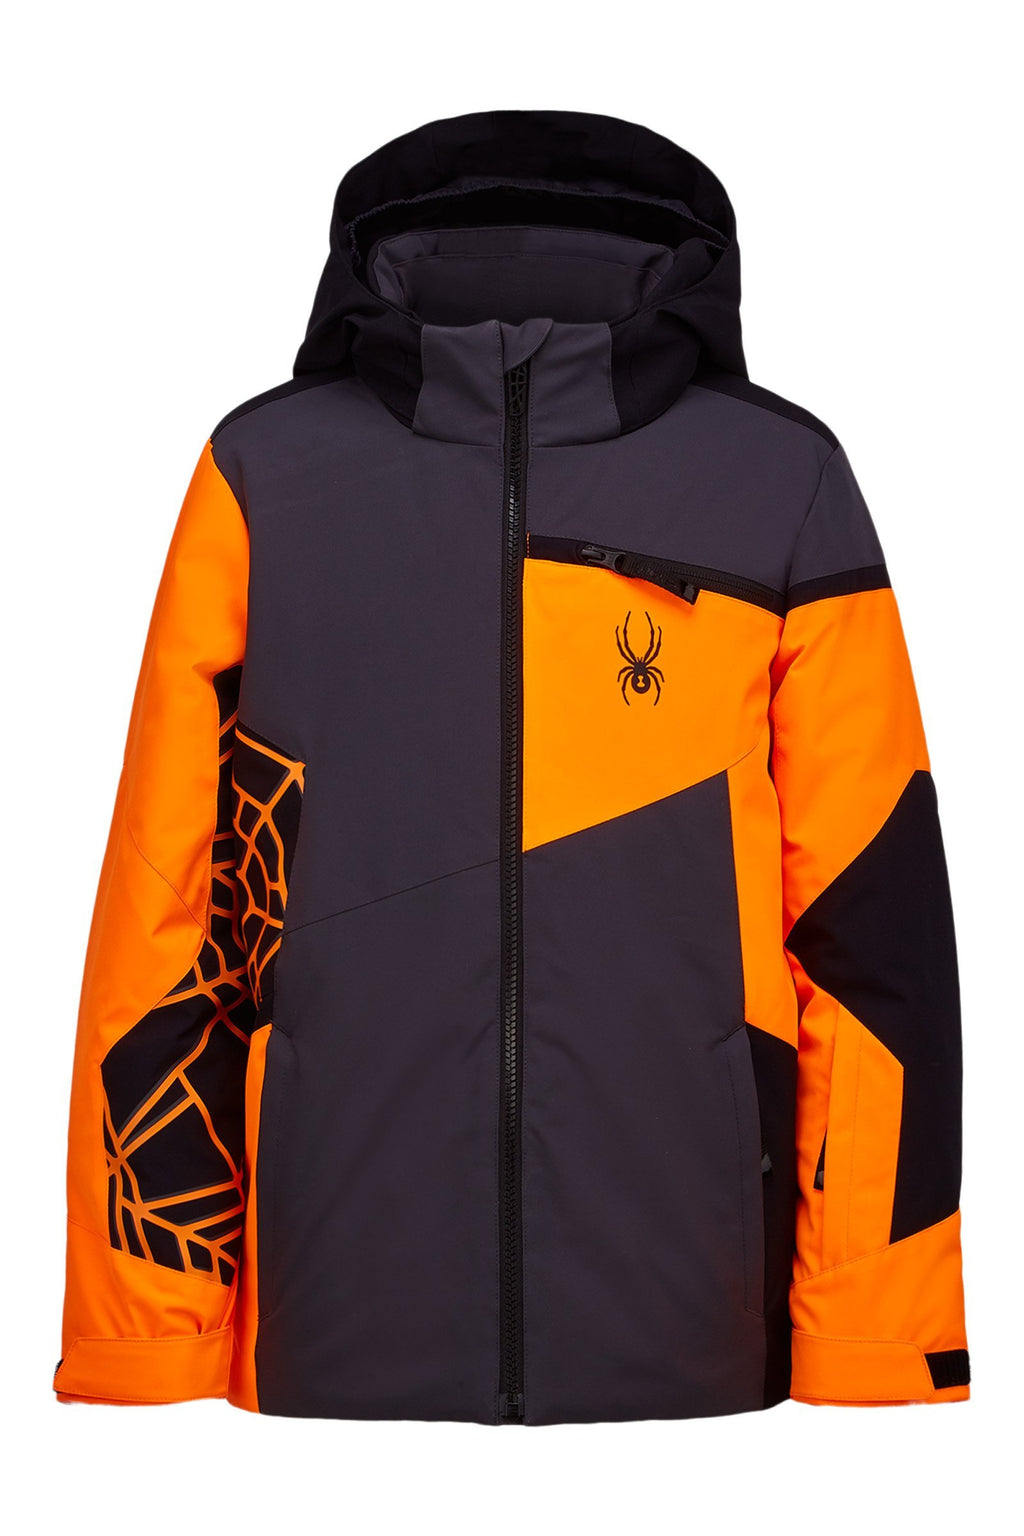 Challenger - Ebony - Spyder. spyder youth ski jacket. 